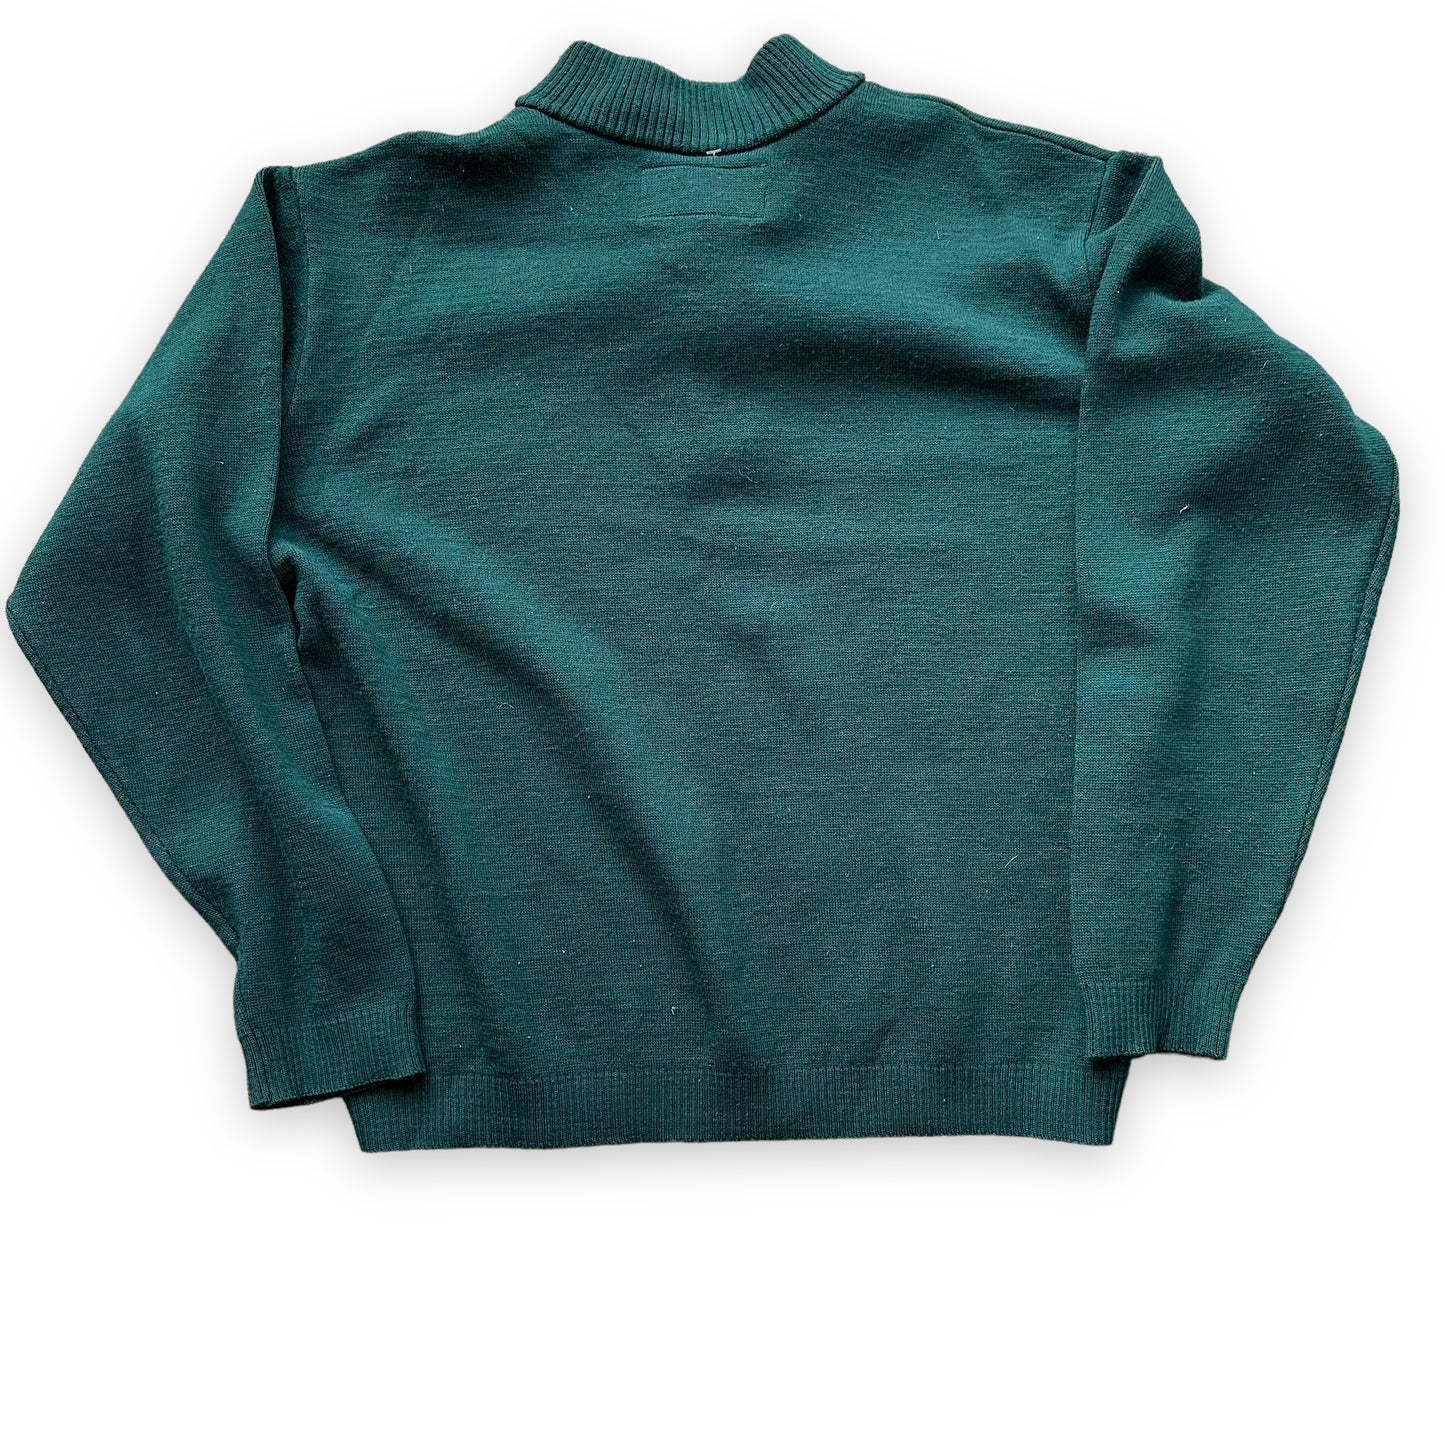 Rear View of Filson Style 719 Dark Green Sweater SZ L |  Vintage Filson Workwear Seattle | Barn Owl Vintage